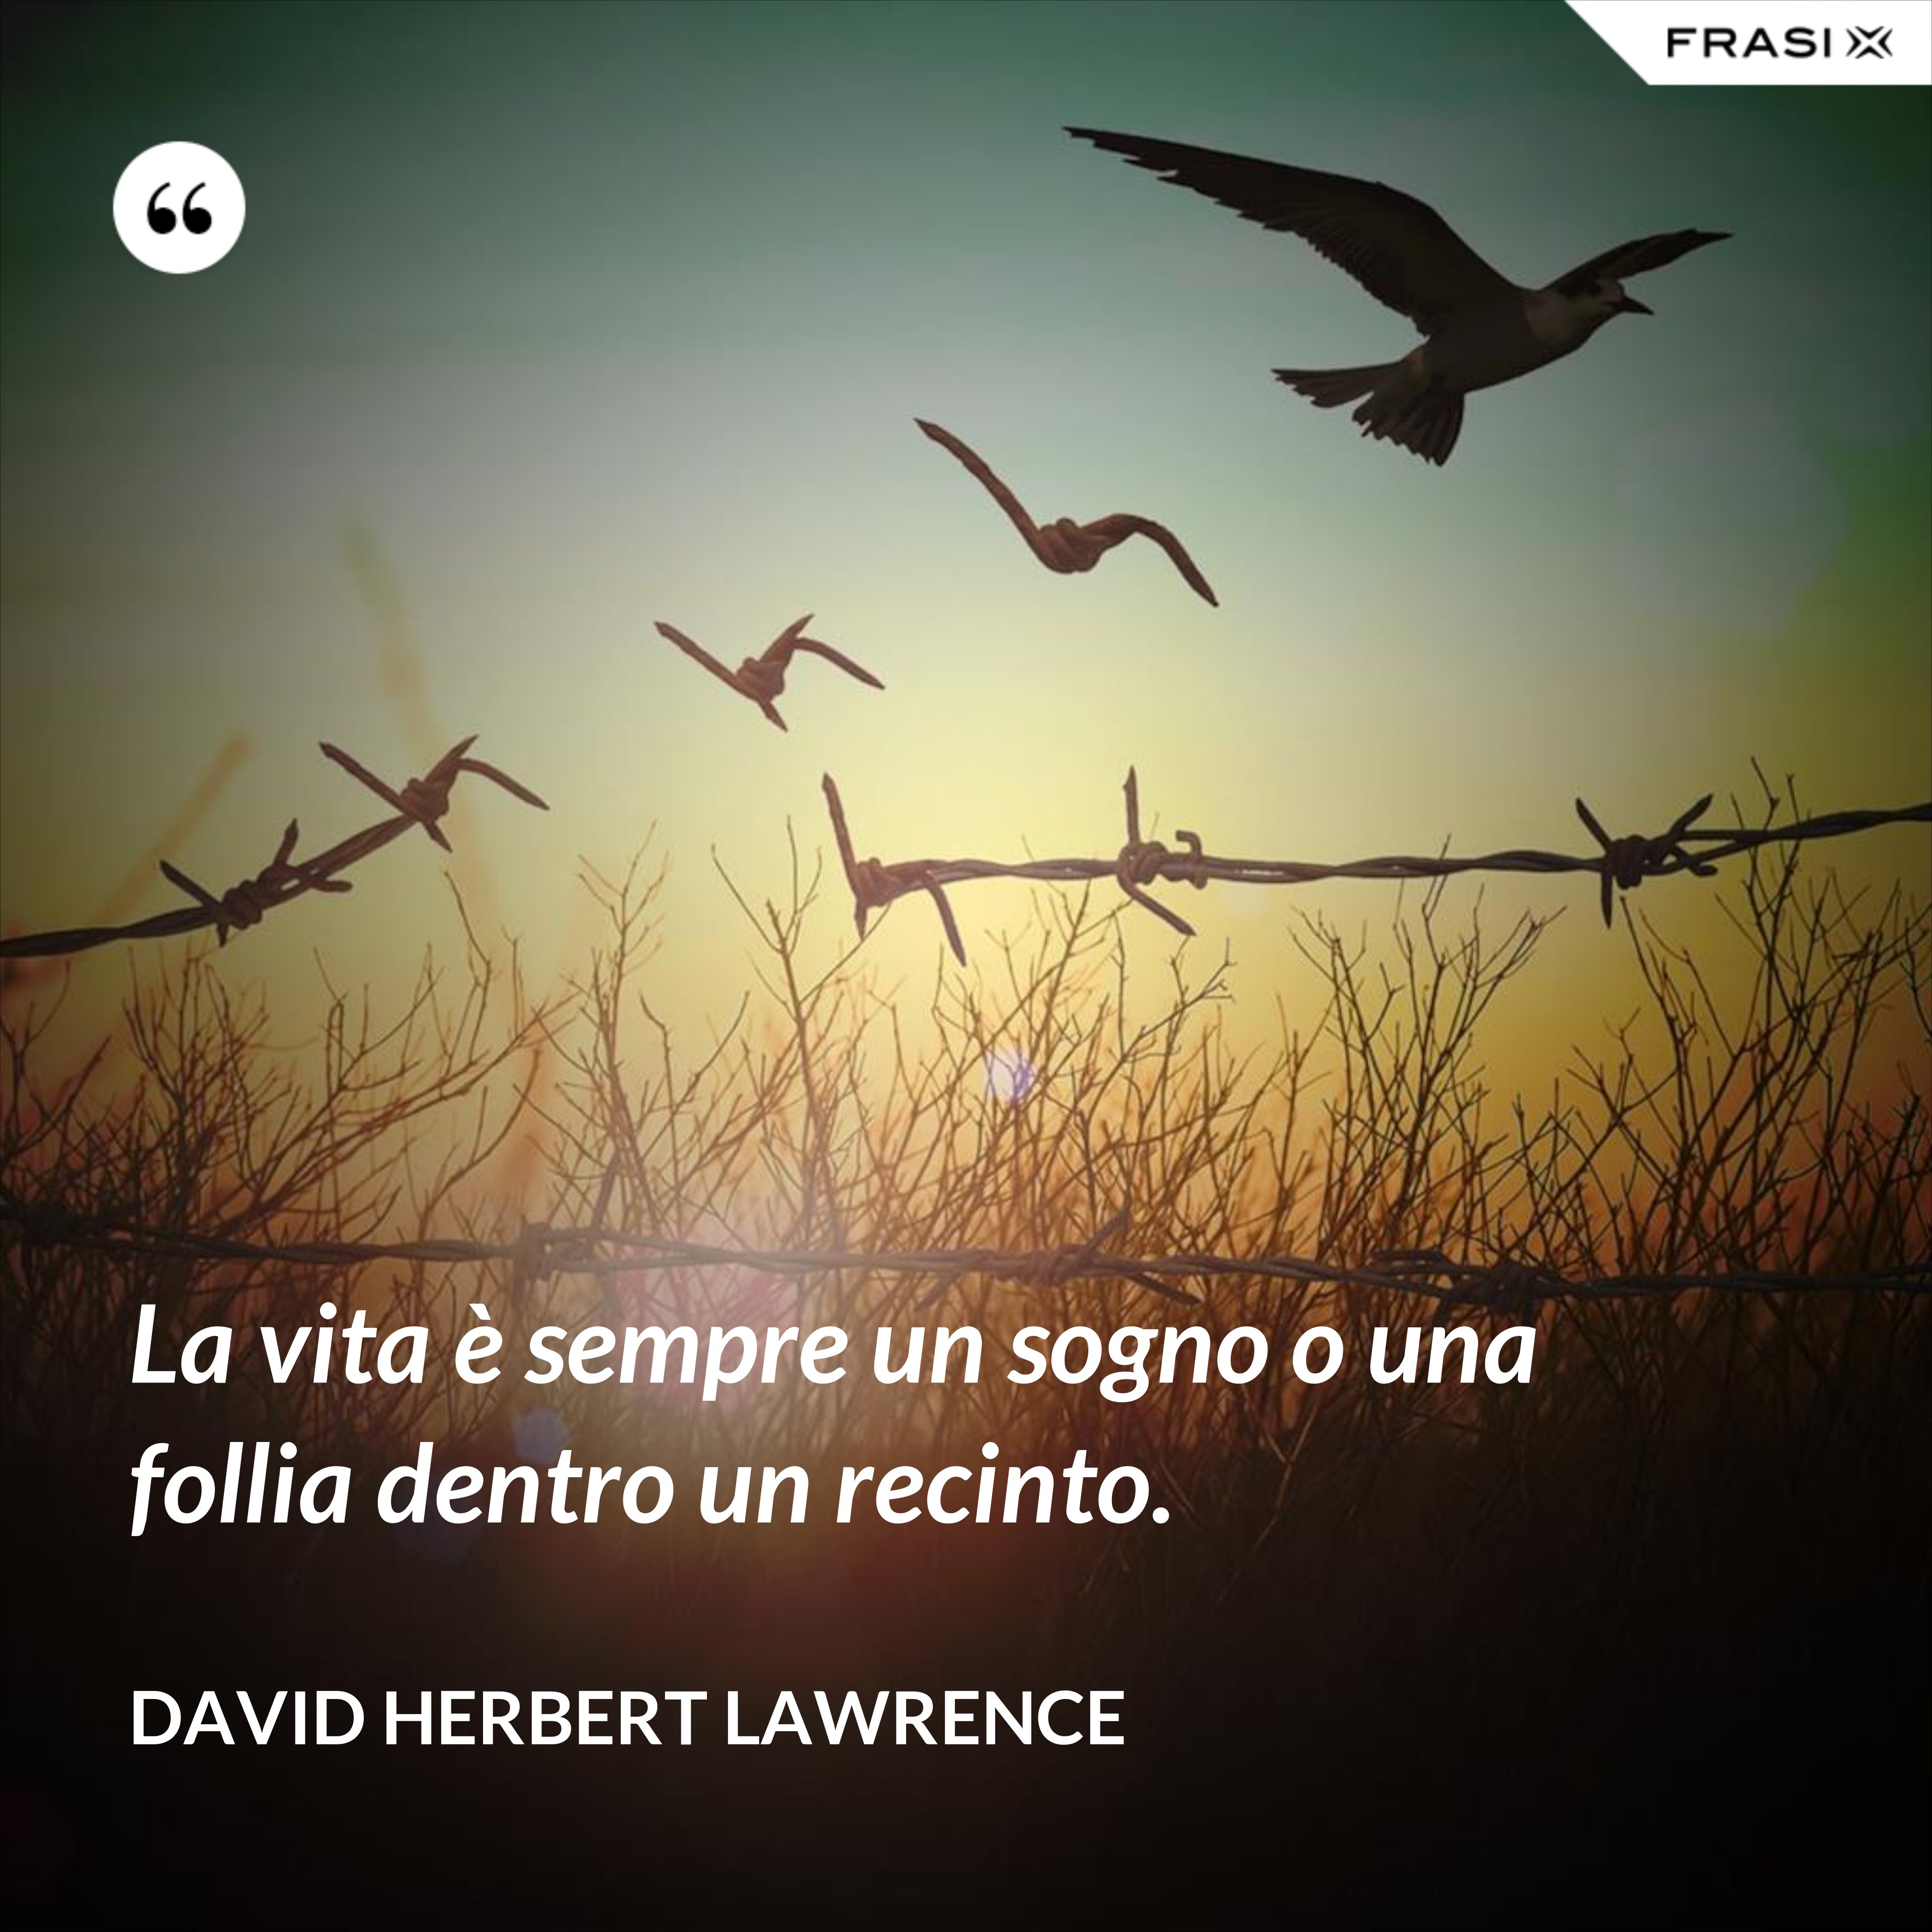 La vita è sempre un sogno o una follia dentro un recinto. - David Herbert Lawrence